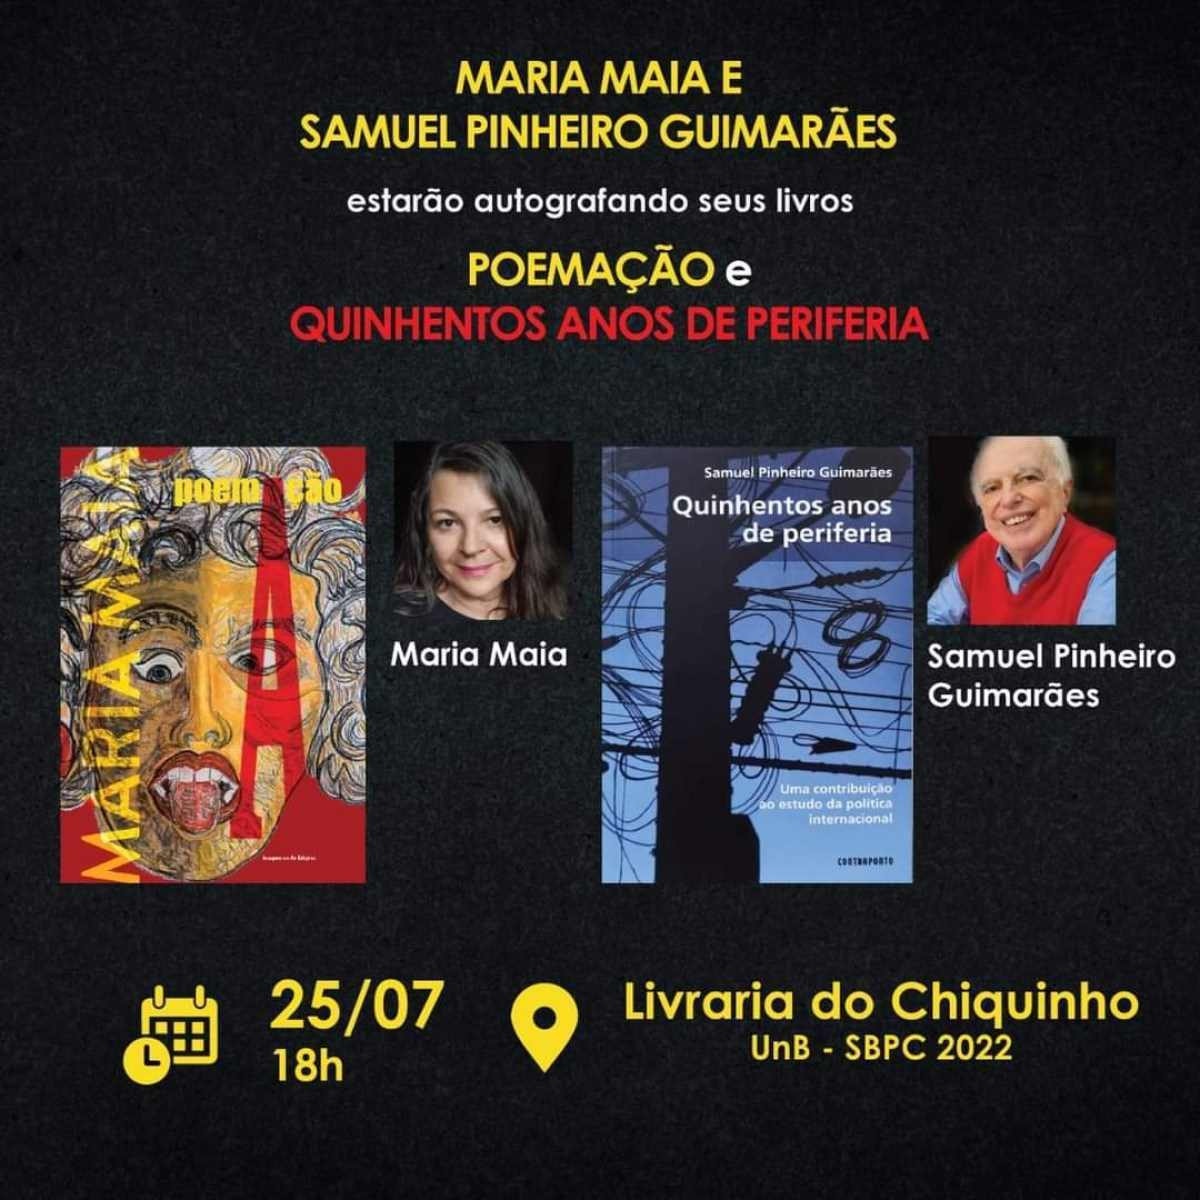 Samuel Pinheiro Guimarães e Maria Maia lançam livros nesta segunda